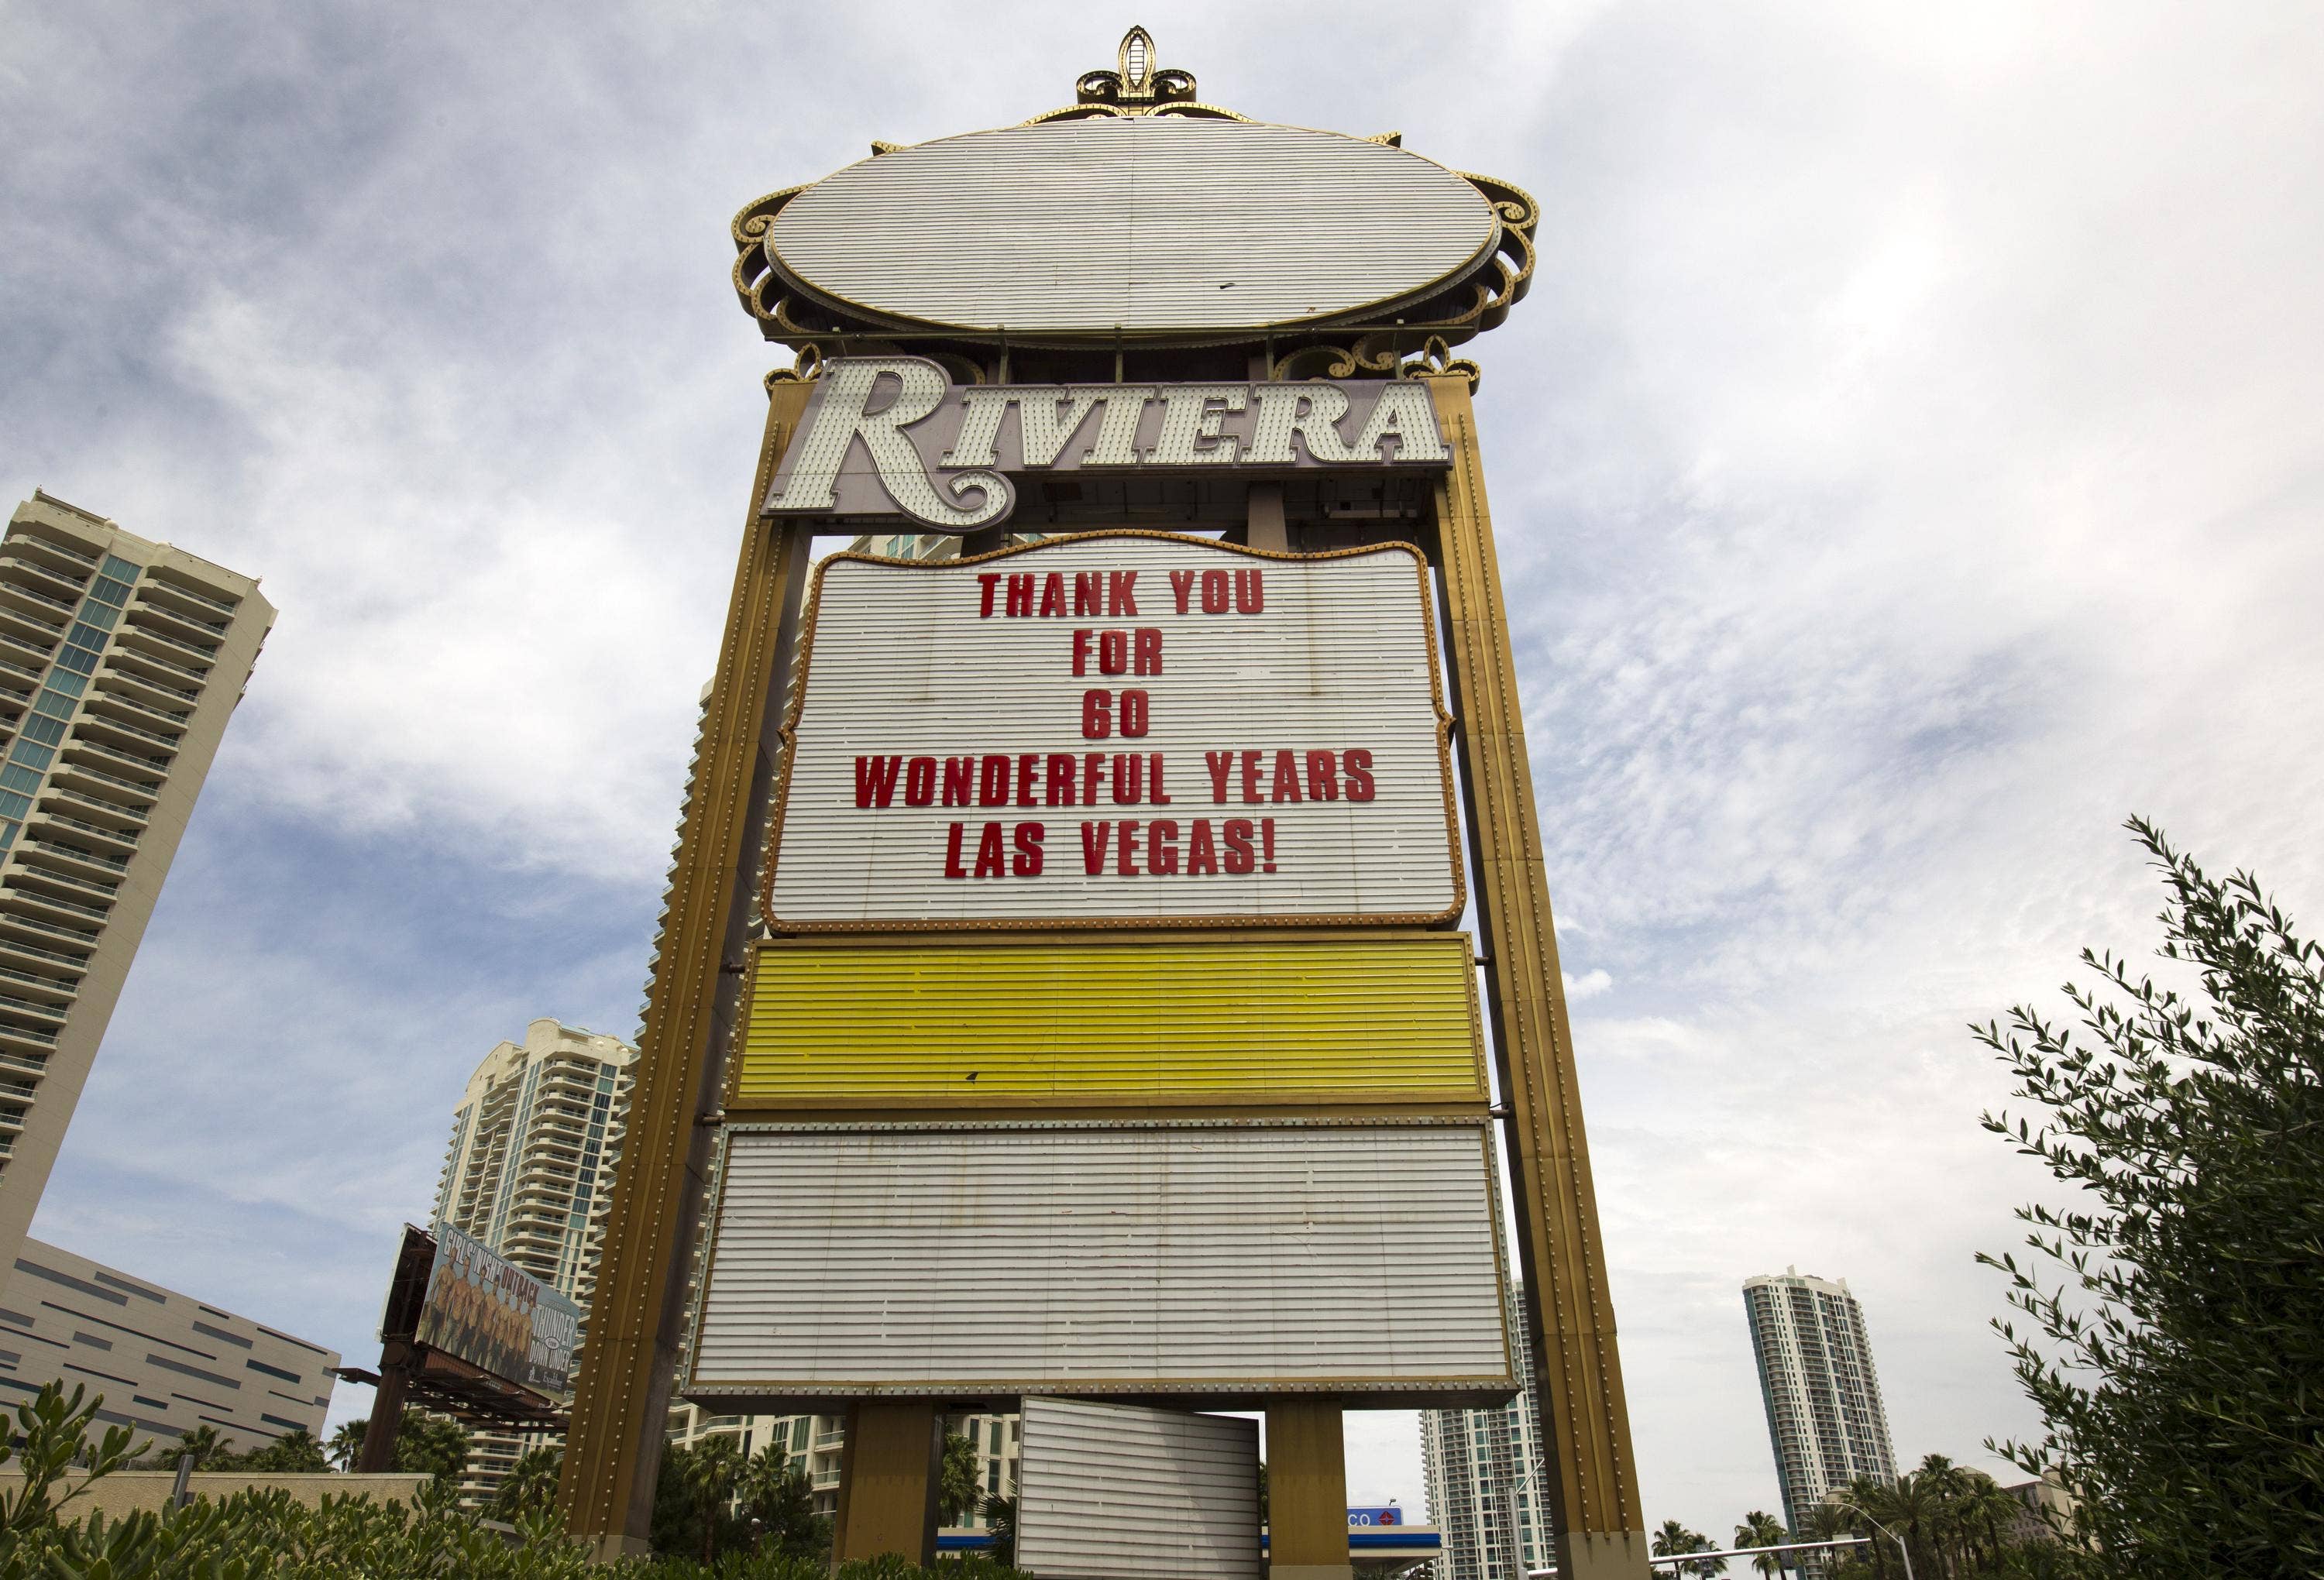 Riviera Casino Hotel sign removal in Las Vegas